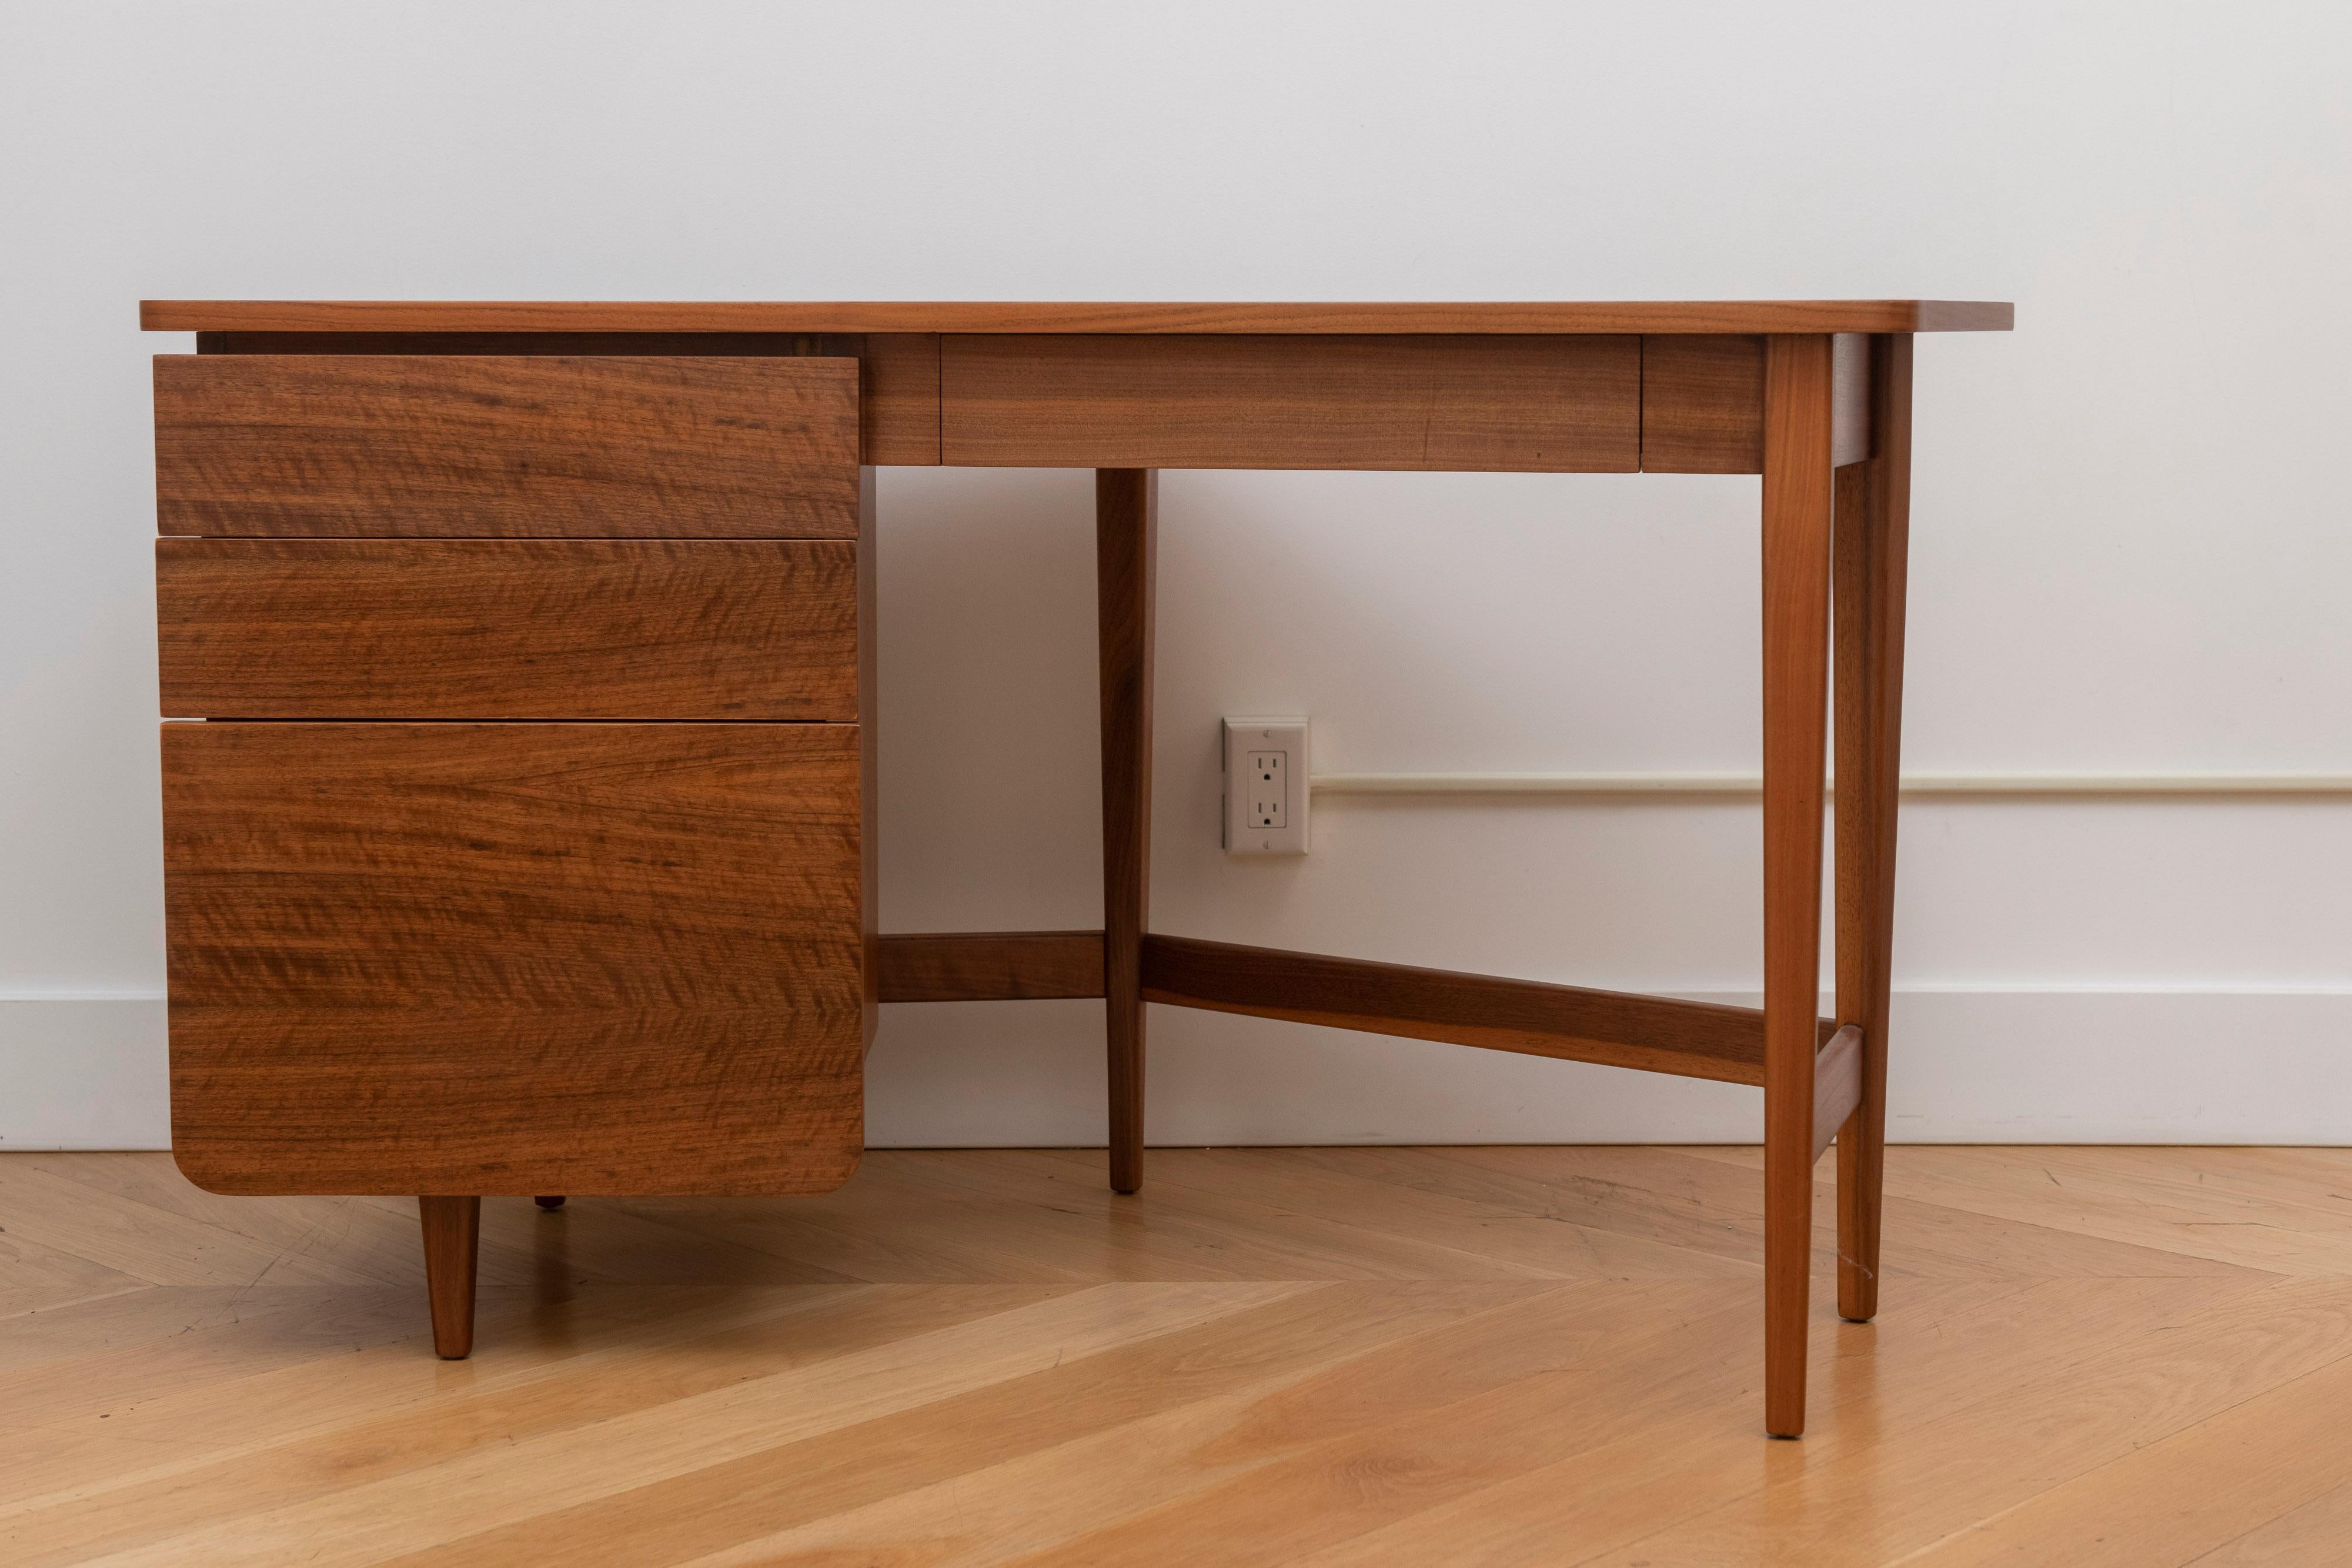 Dies ist ein seltener und eleganter moderner Schreibtisch, entworfen von Bertha Schaefer für Singer and Sons, ca. 1950er Jahre. Schöne Maserung des italienischen Nussbaums, besonders an der Oberseite. Schaefer war eine der führenden Designerinnen